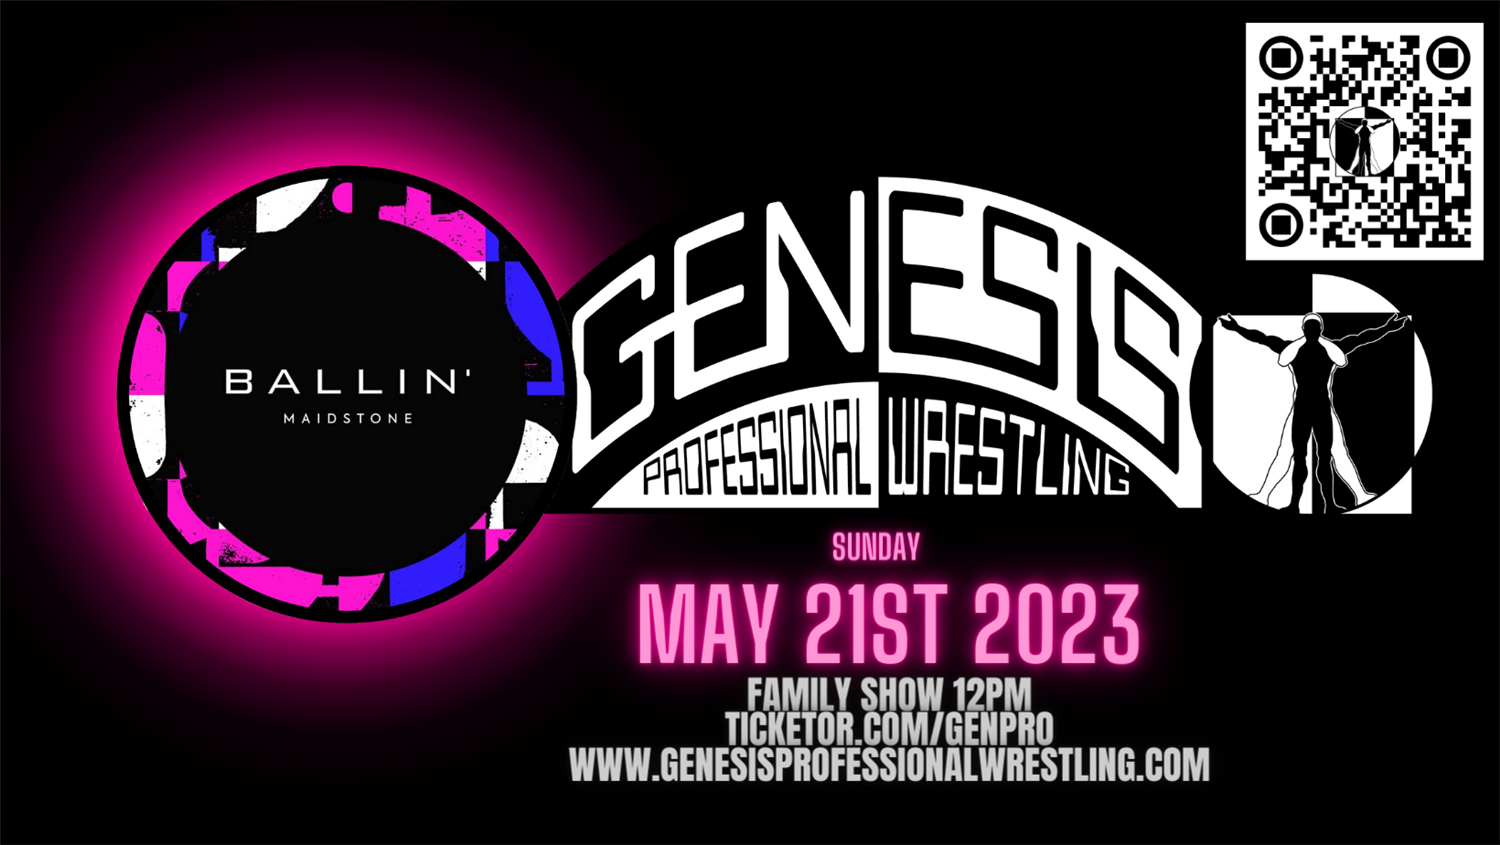 Genesis Professional Wrestling Family Show Ballin' Maidstone, family Show 12PM on mai 21, 12:00@Ballin' - Choisissez un siège,Achetez des billets et obtenez des informations surGenesis Professional Wrestling 